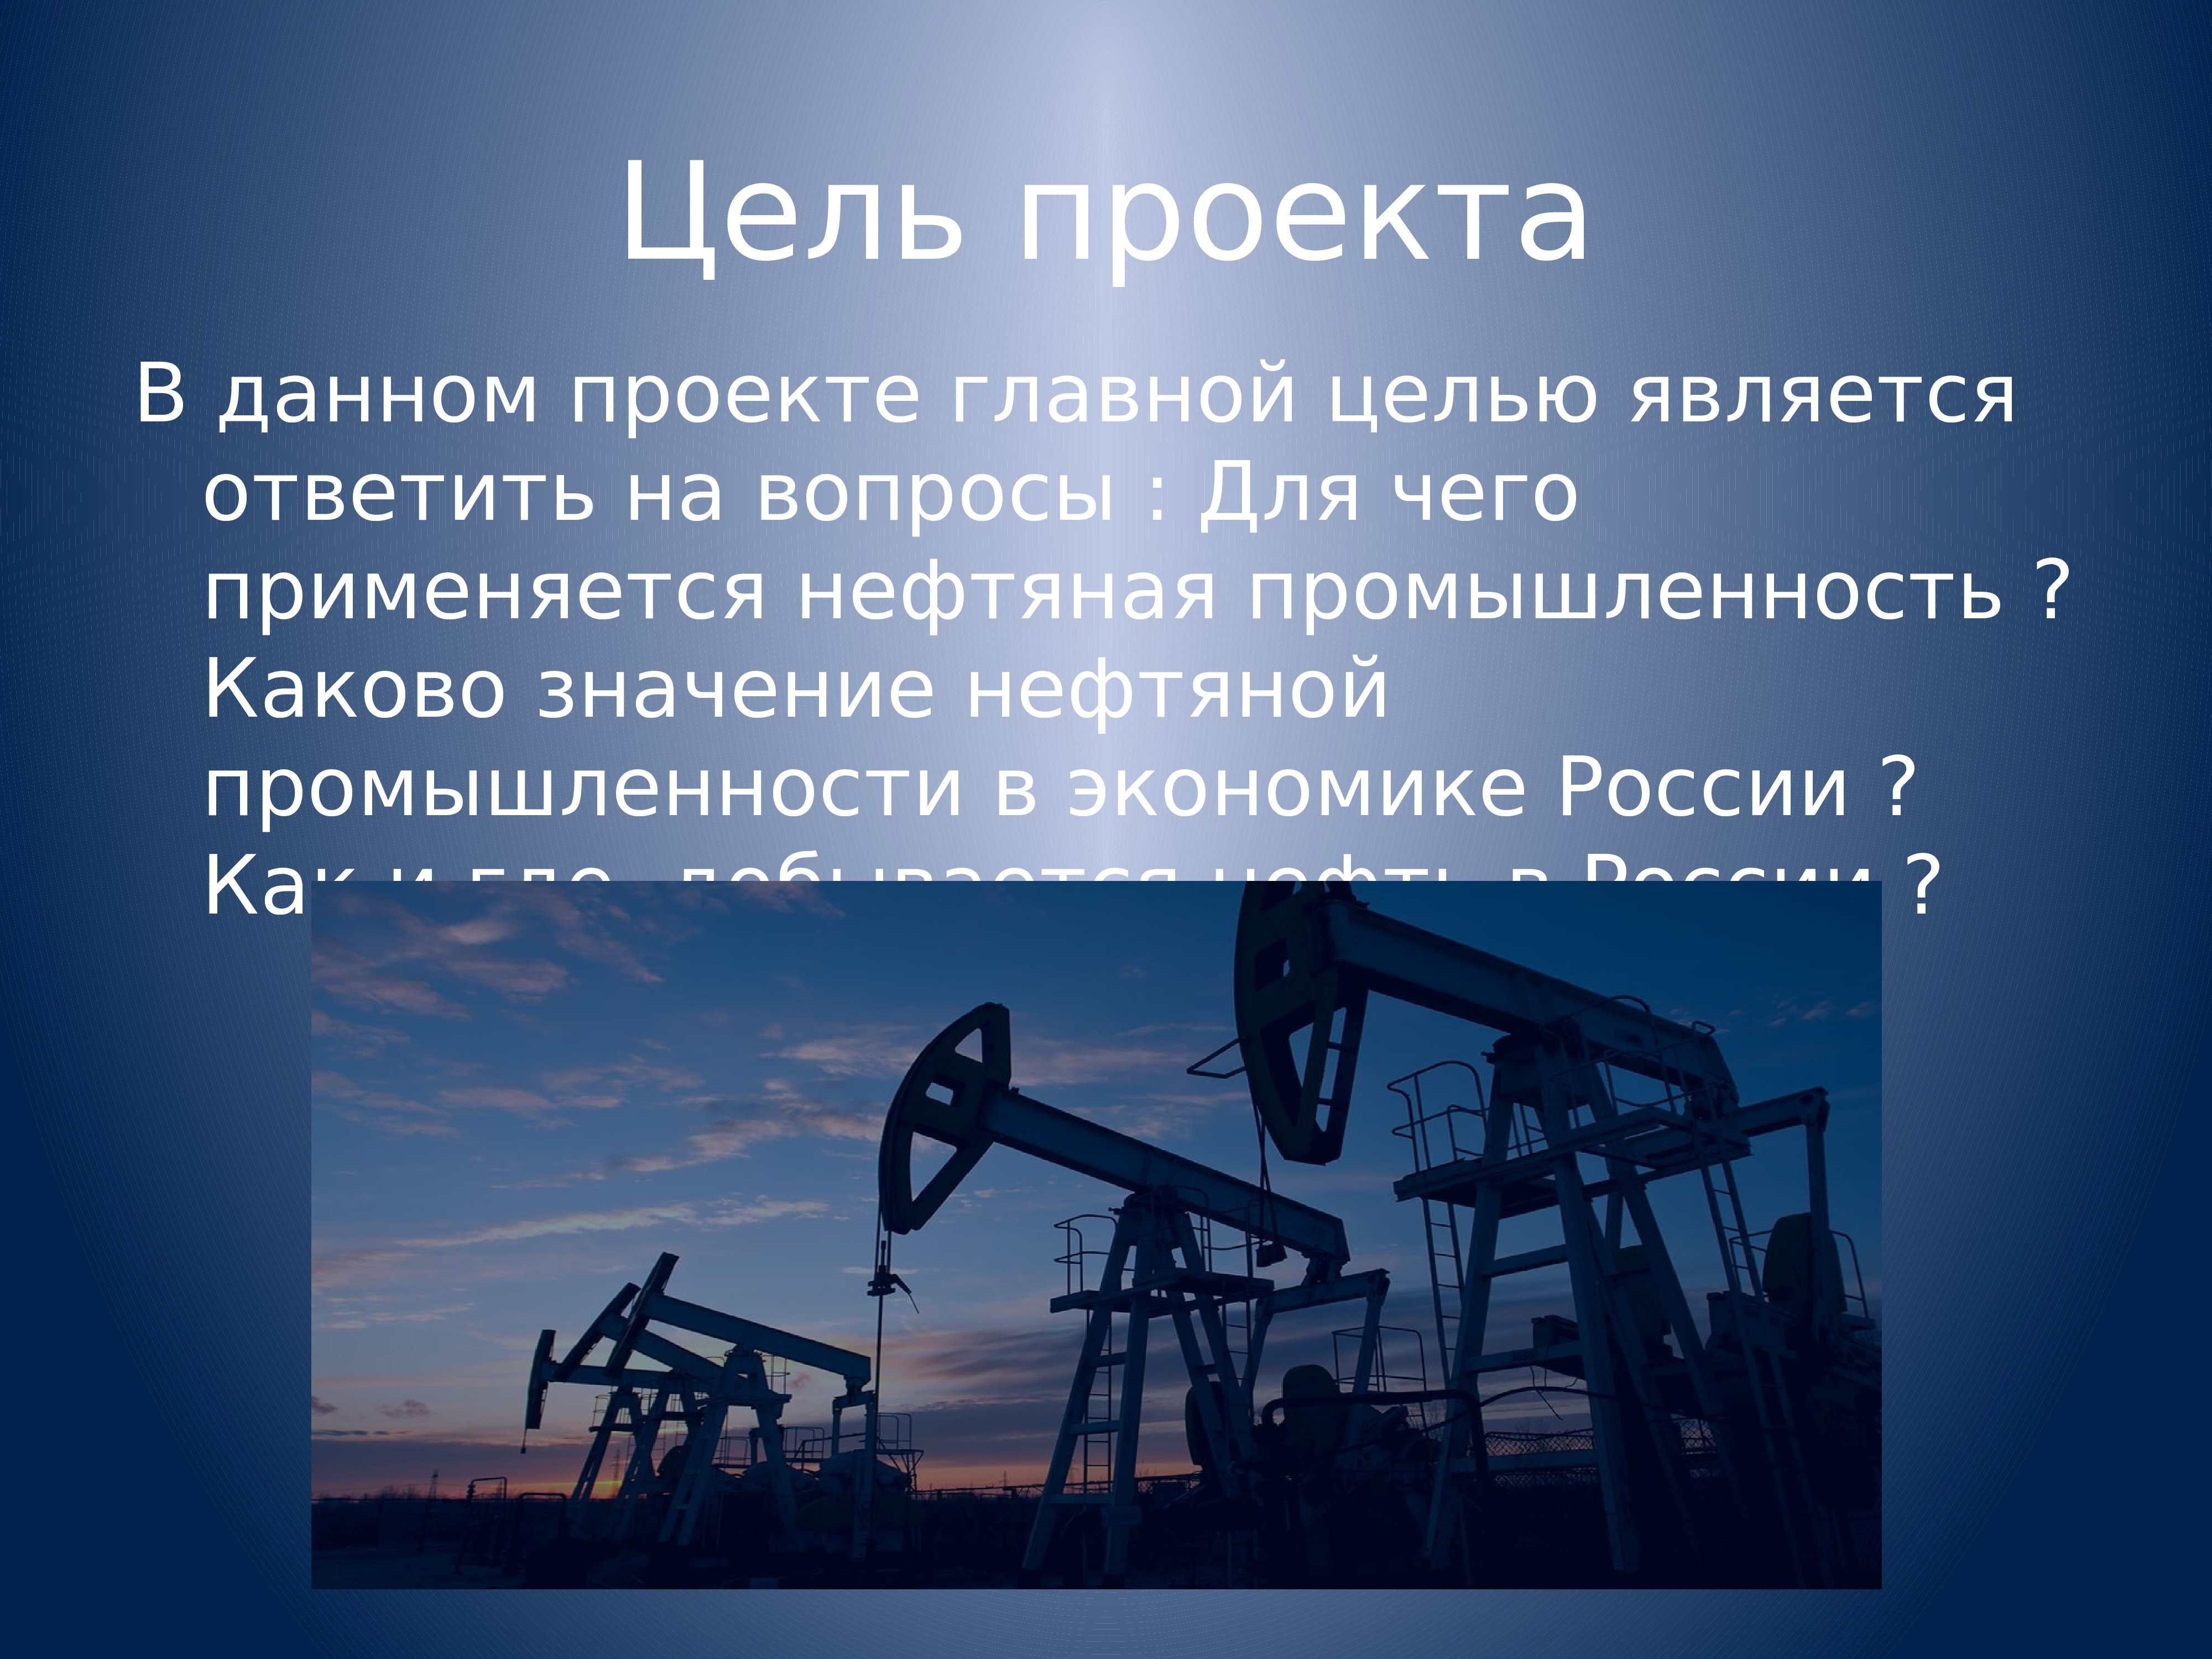 Легкие нефти россии. Нефтяная промышленность России. Нефтяная промышленность презентация. Нефтяная промышленность Росси. Нефтяная промышленность цели проекта.